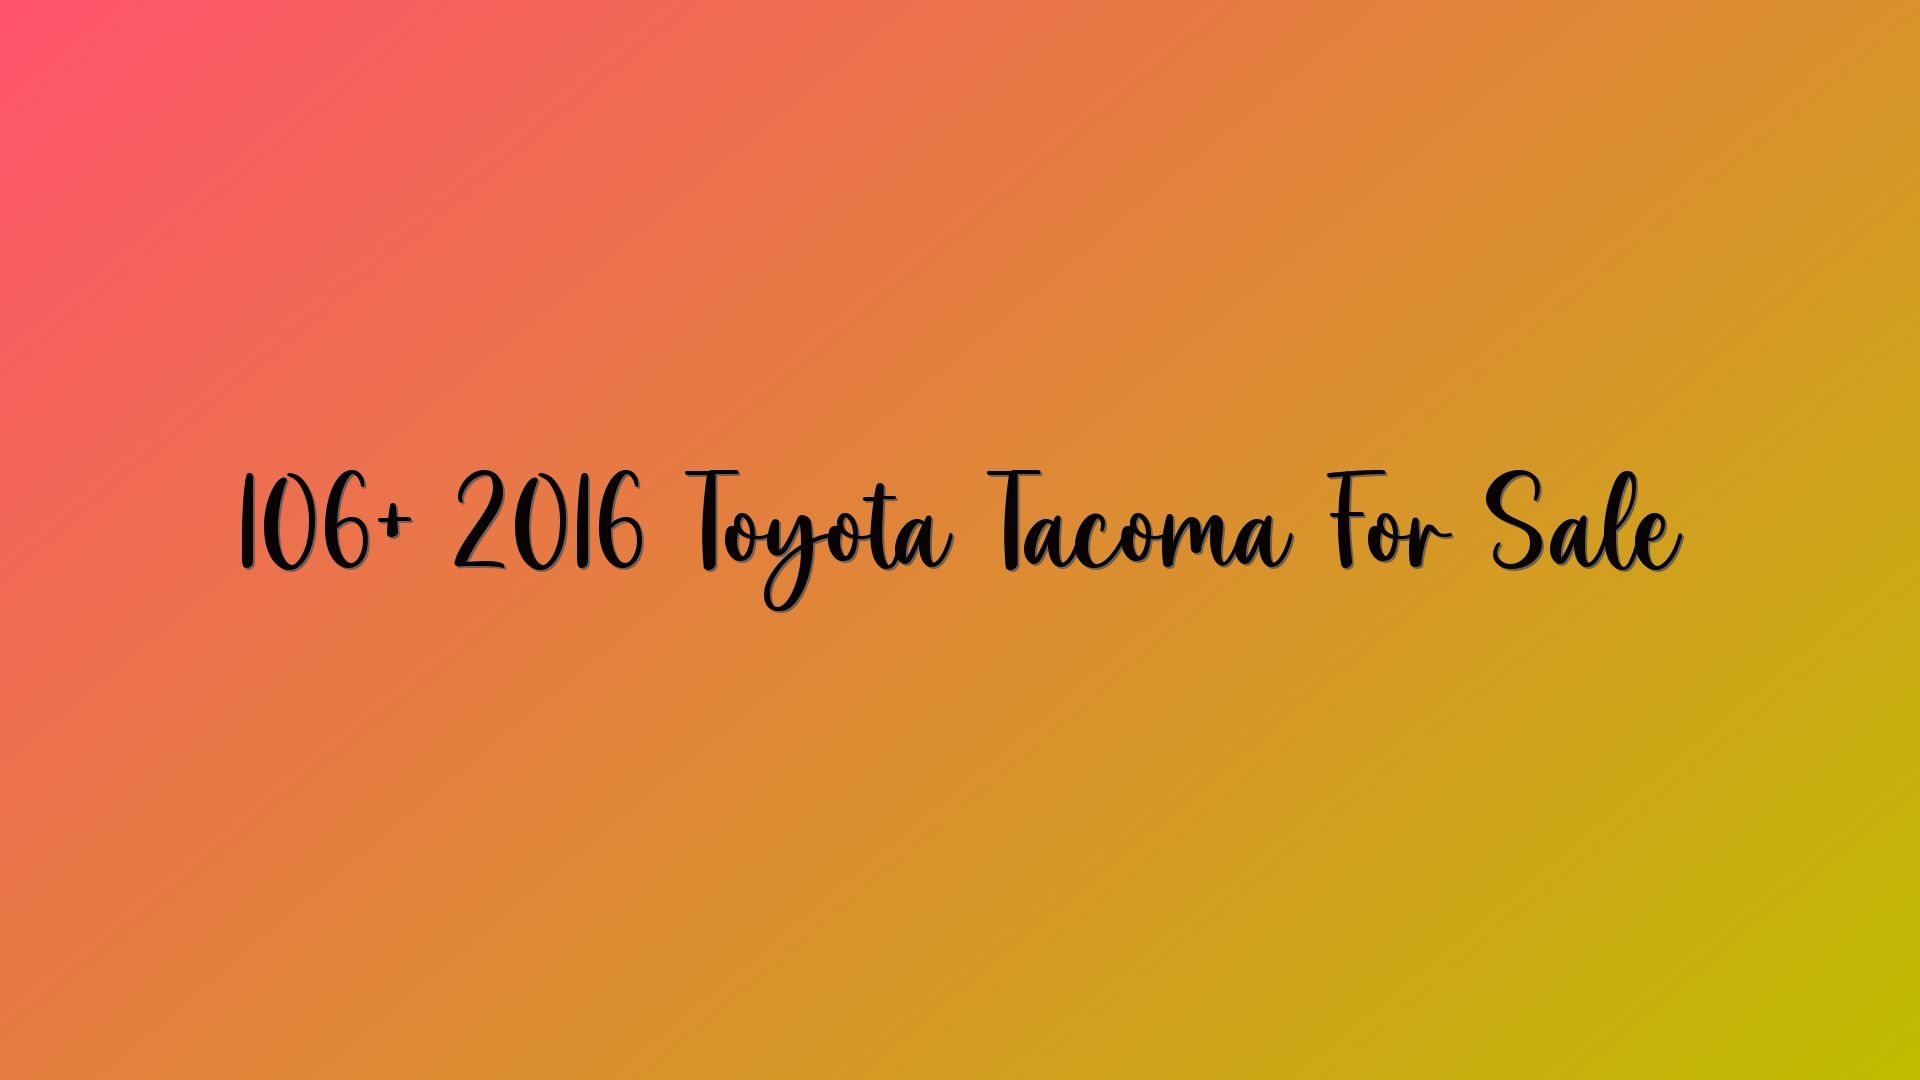 106+ 2016 Toyota Tacoma For Sale